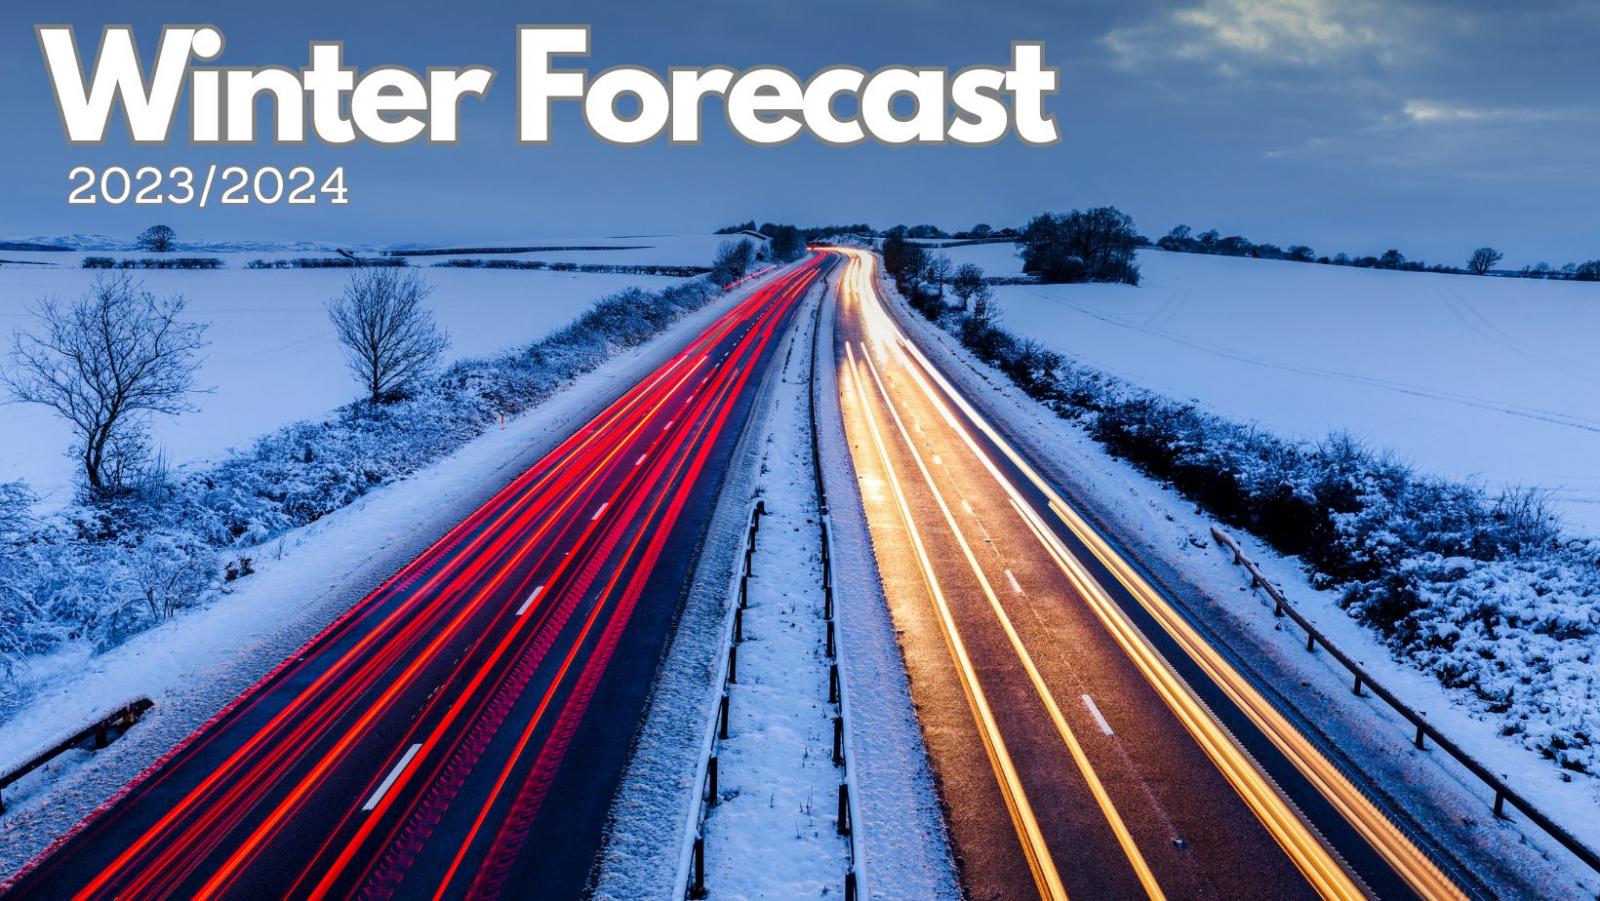 Long range Winter forecast for 2023/2024 issued